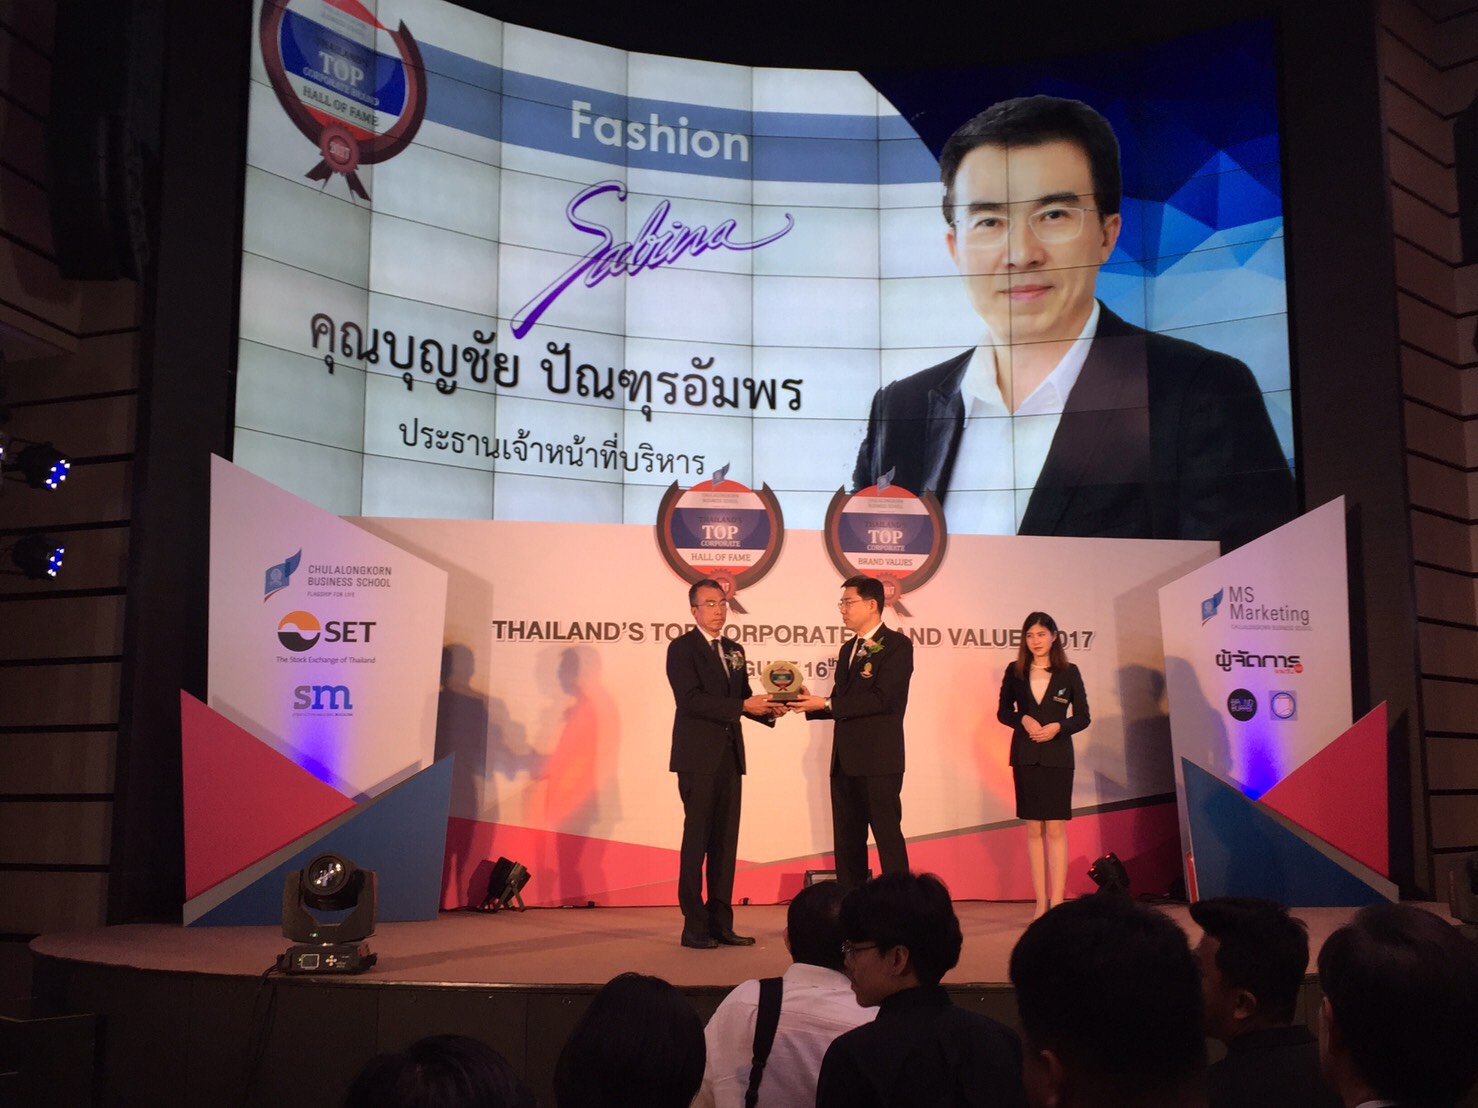 บริษัทซาบีน่า ได้รับรางวัล Thailand’s Top Corporate Brand Values Hall of Fame 2017 องค์กรที่มีมูลค่าแบรนด์องค์กรสูงสุดต่อเนื่อง 5 ปี (16.08.17)